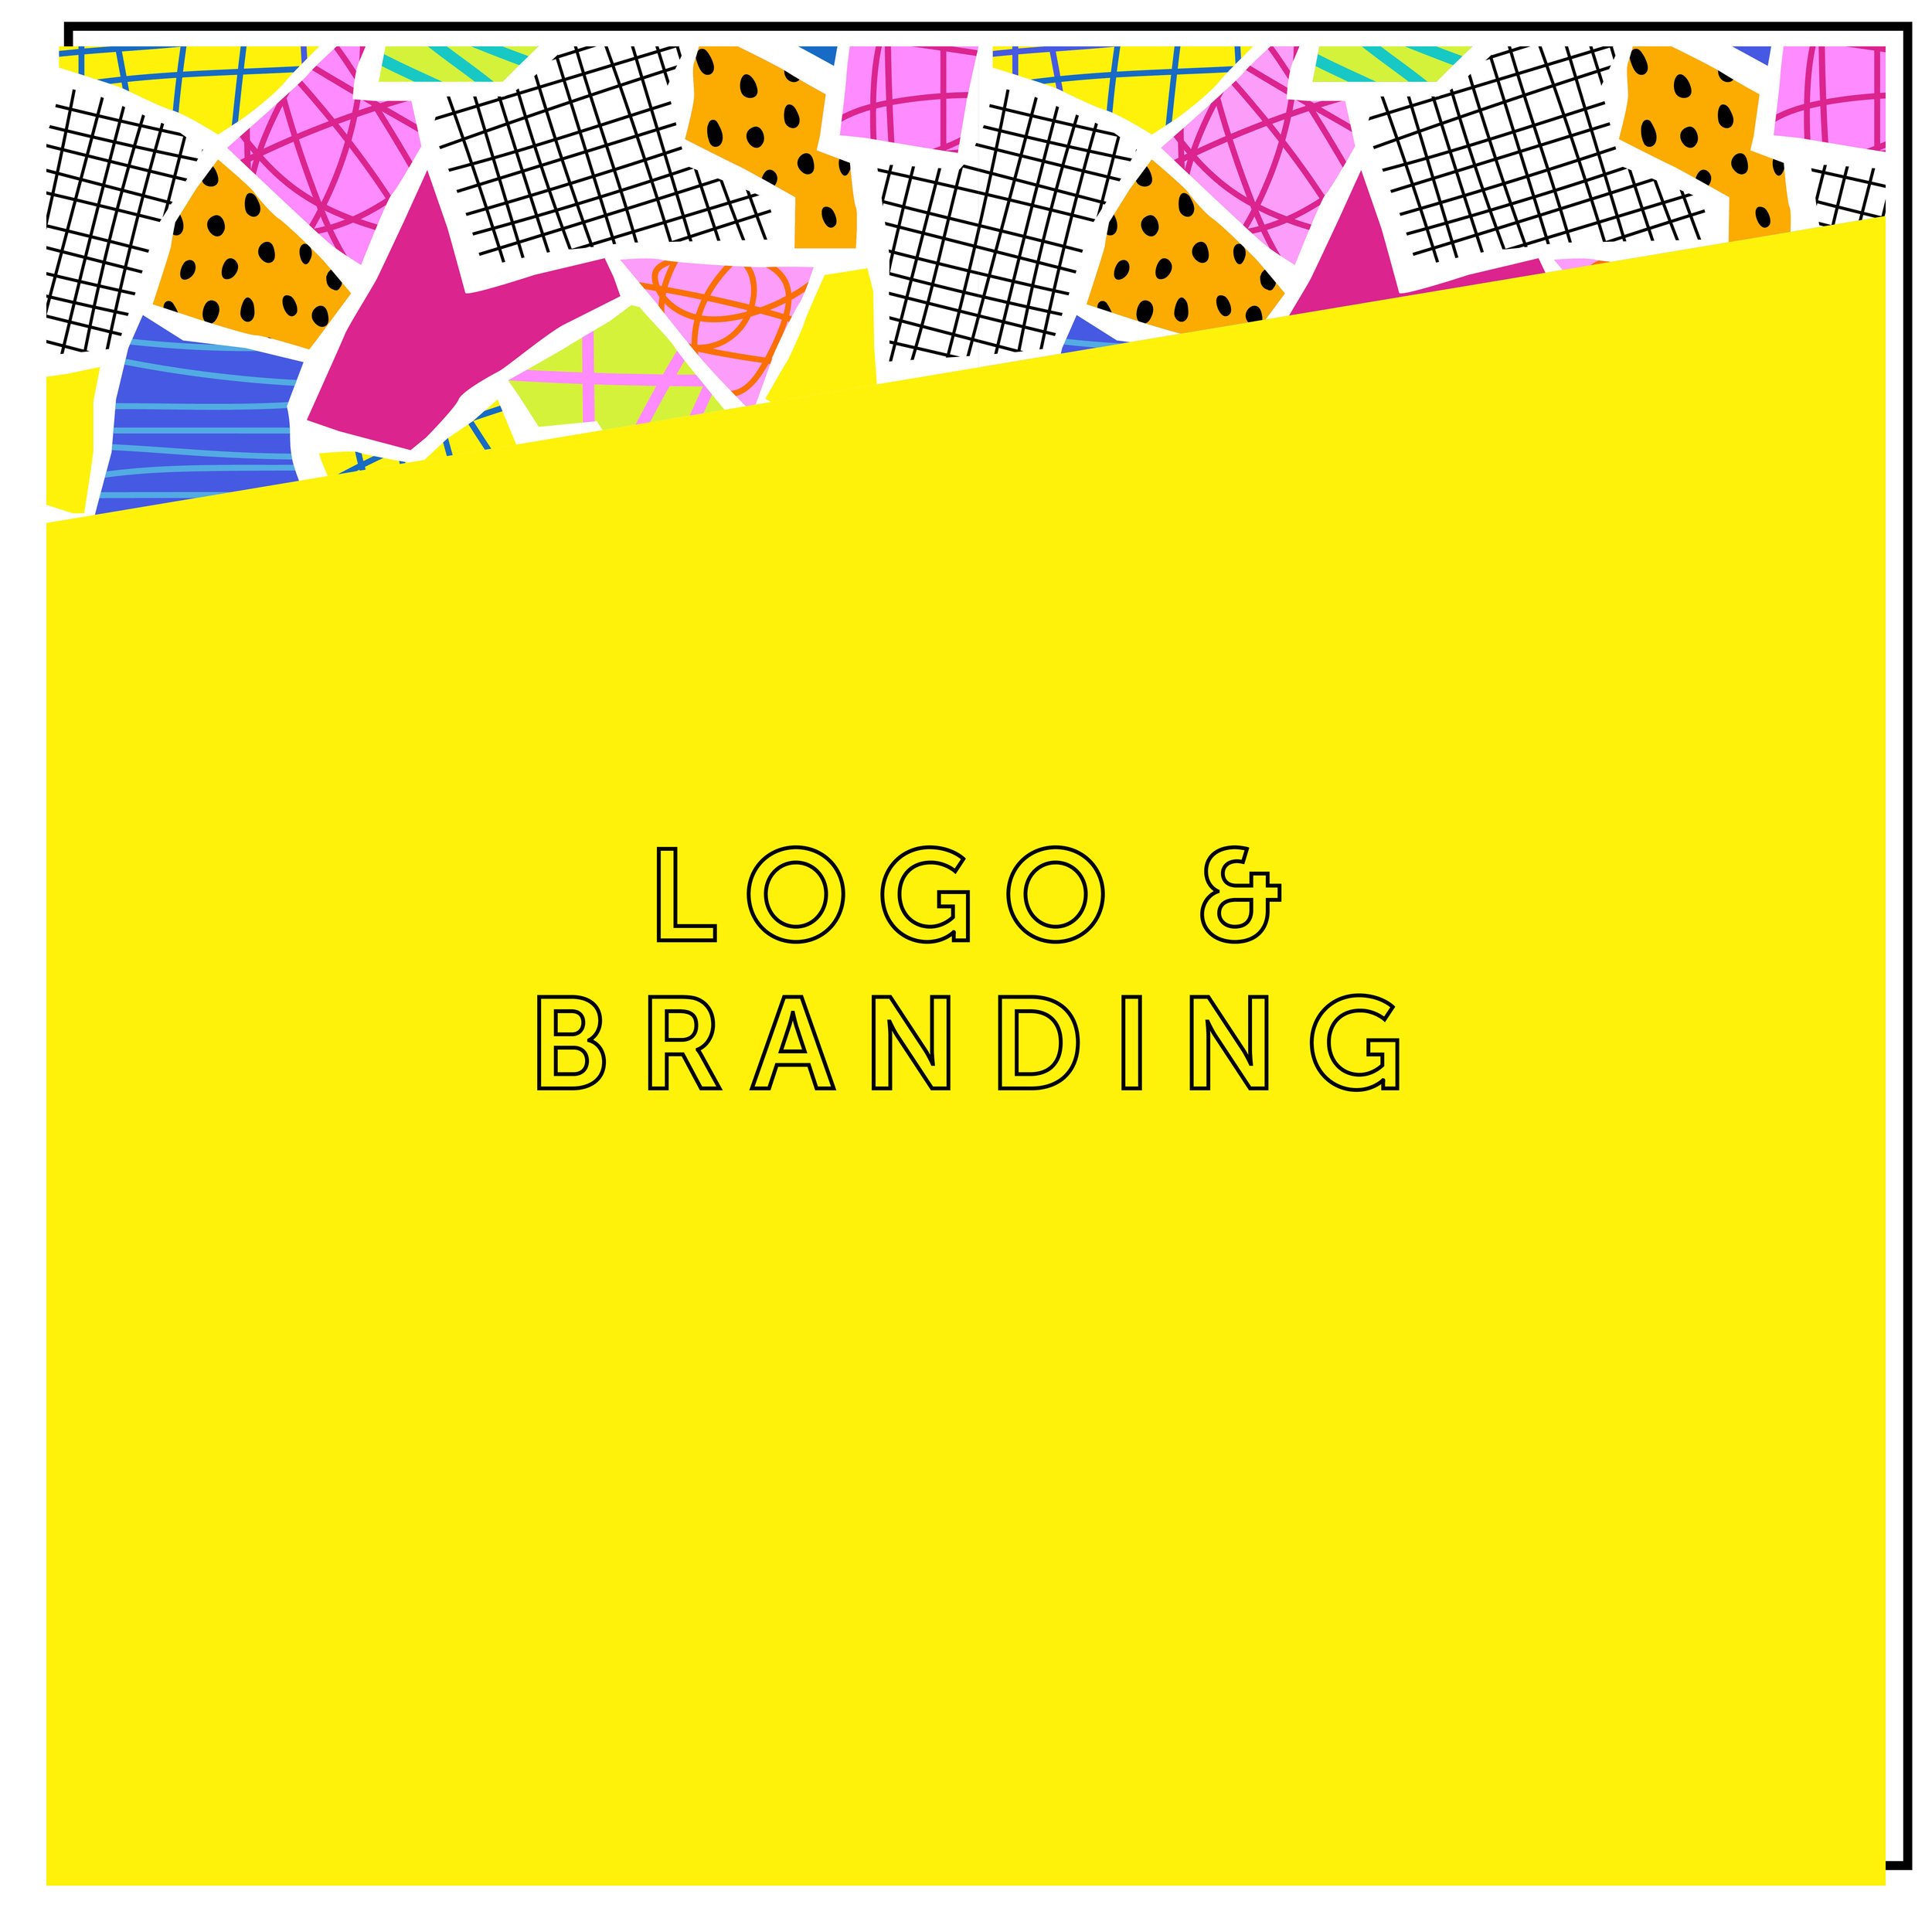 Logos &amp; branding